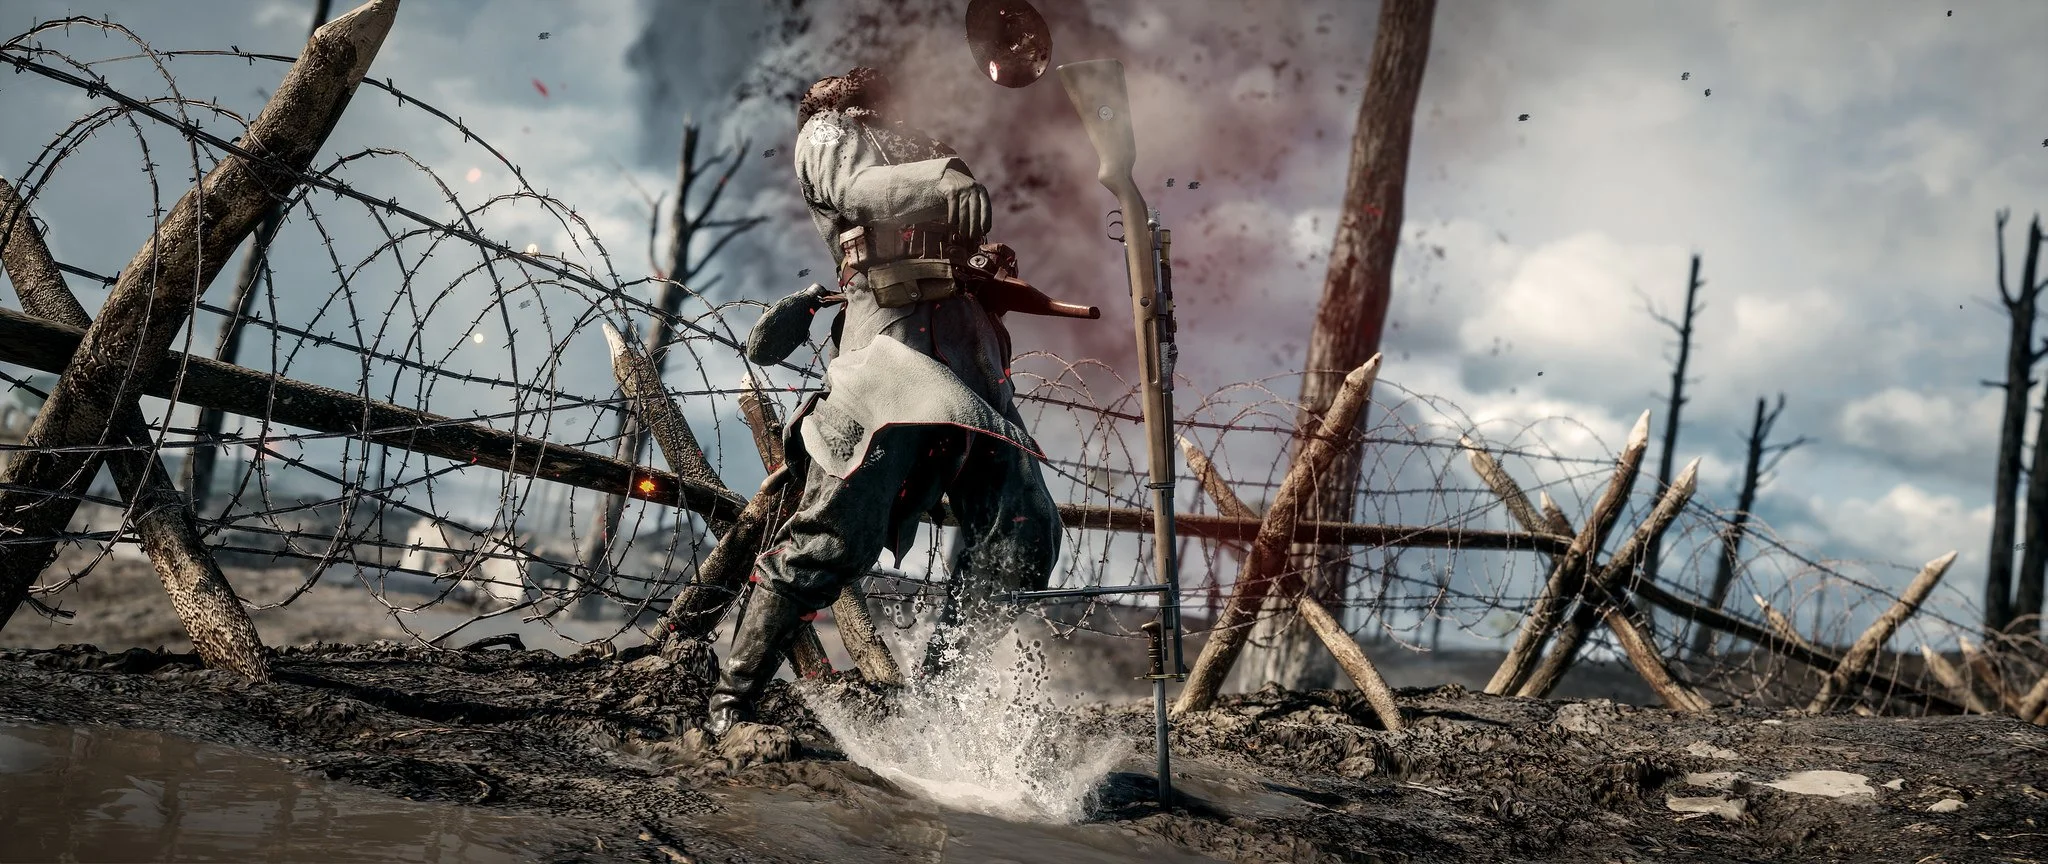 Изумительные скриншоты Battlefield 1 - фото 29